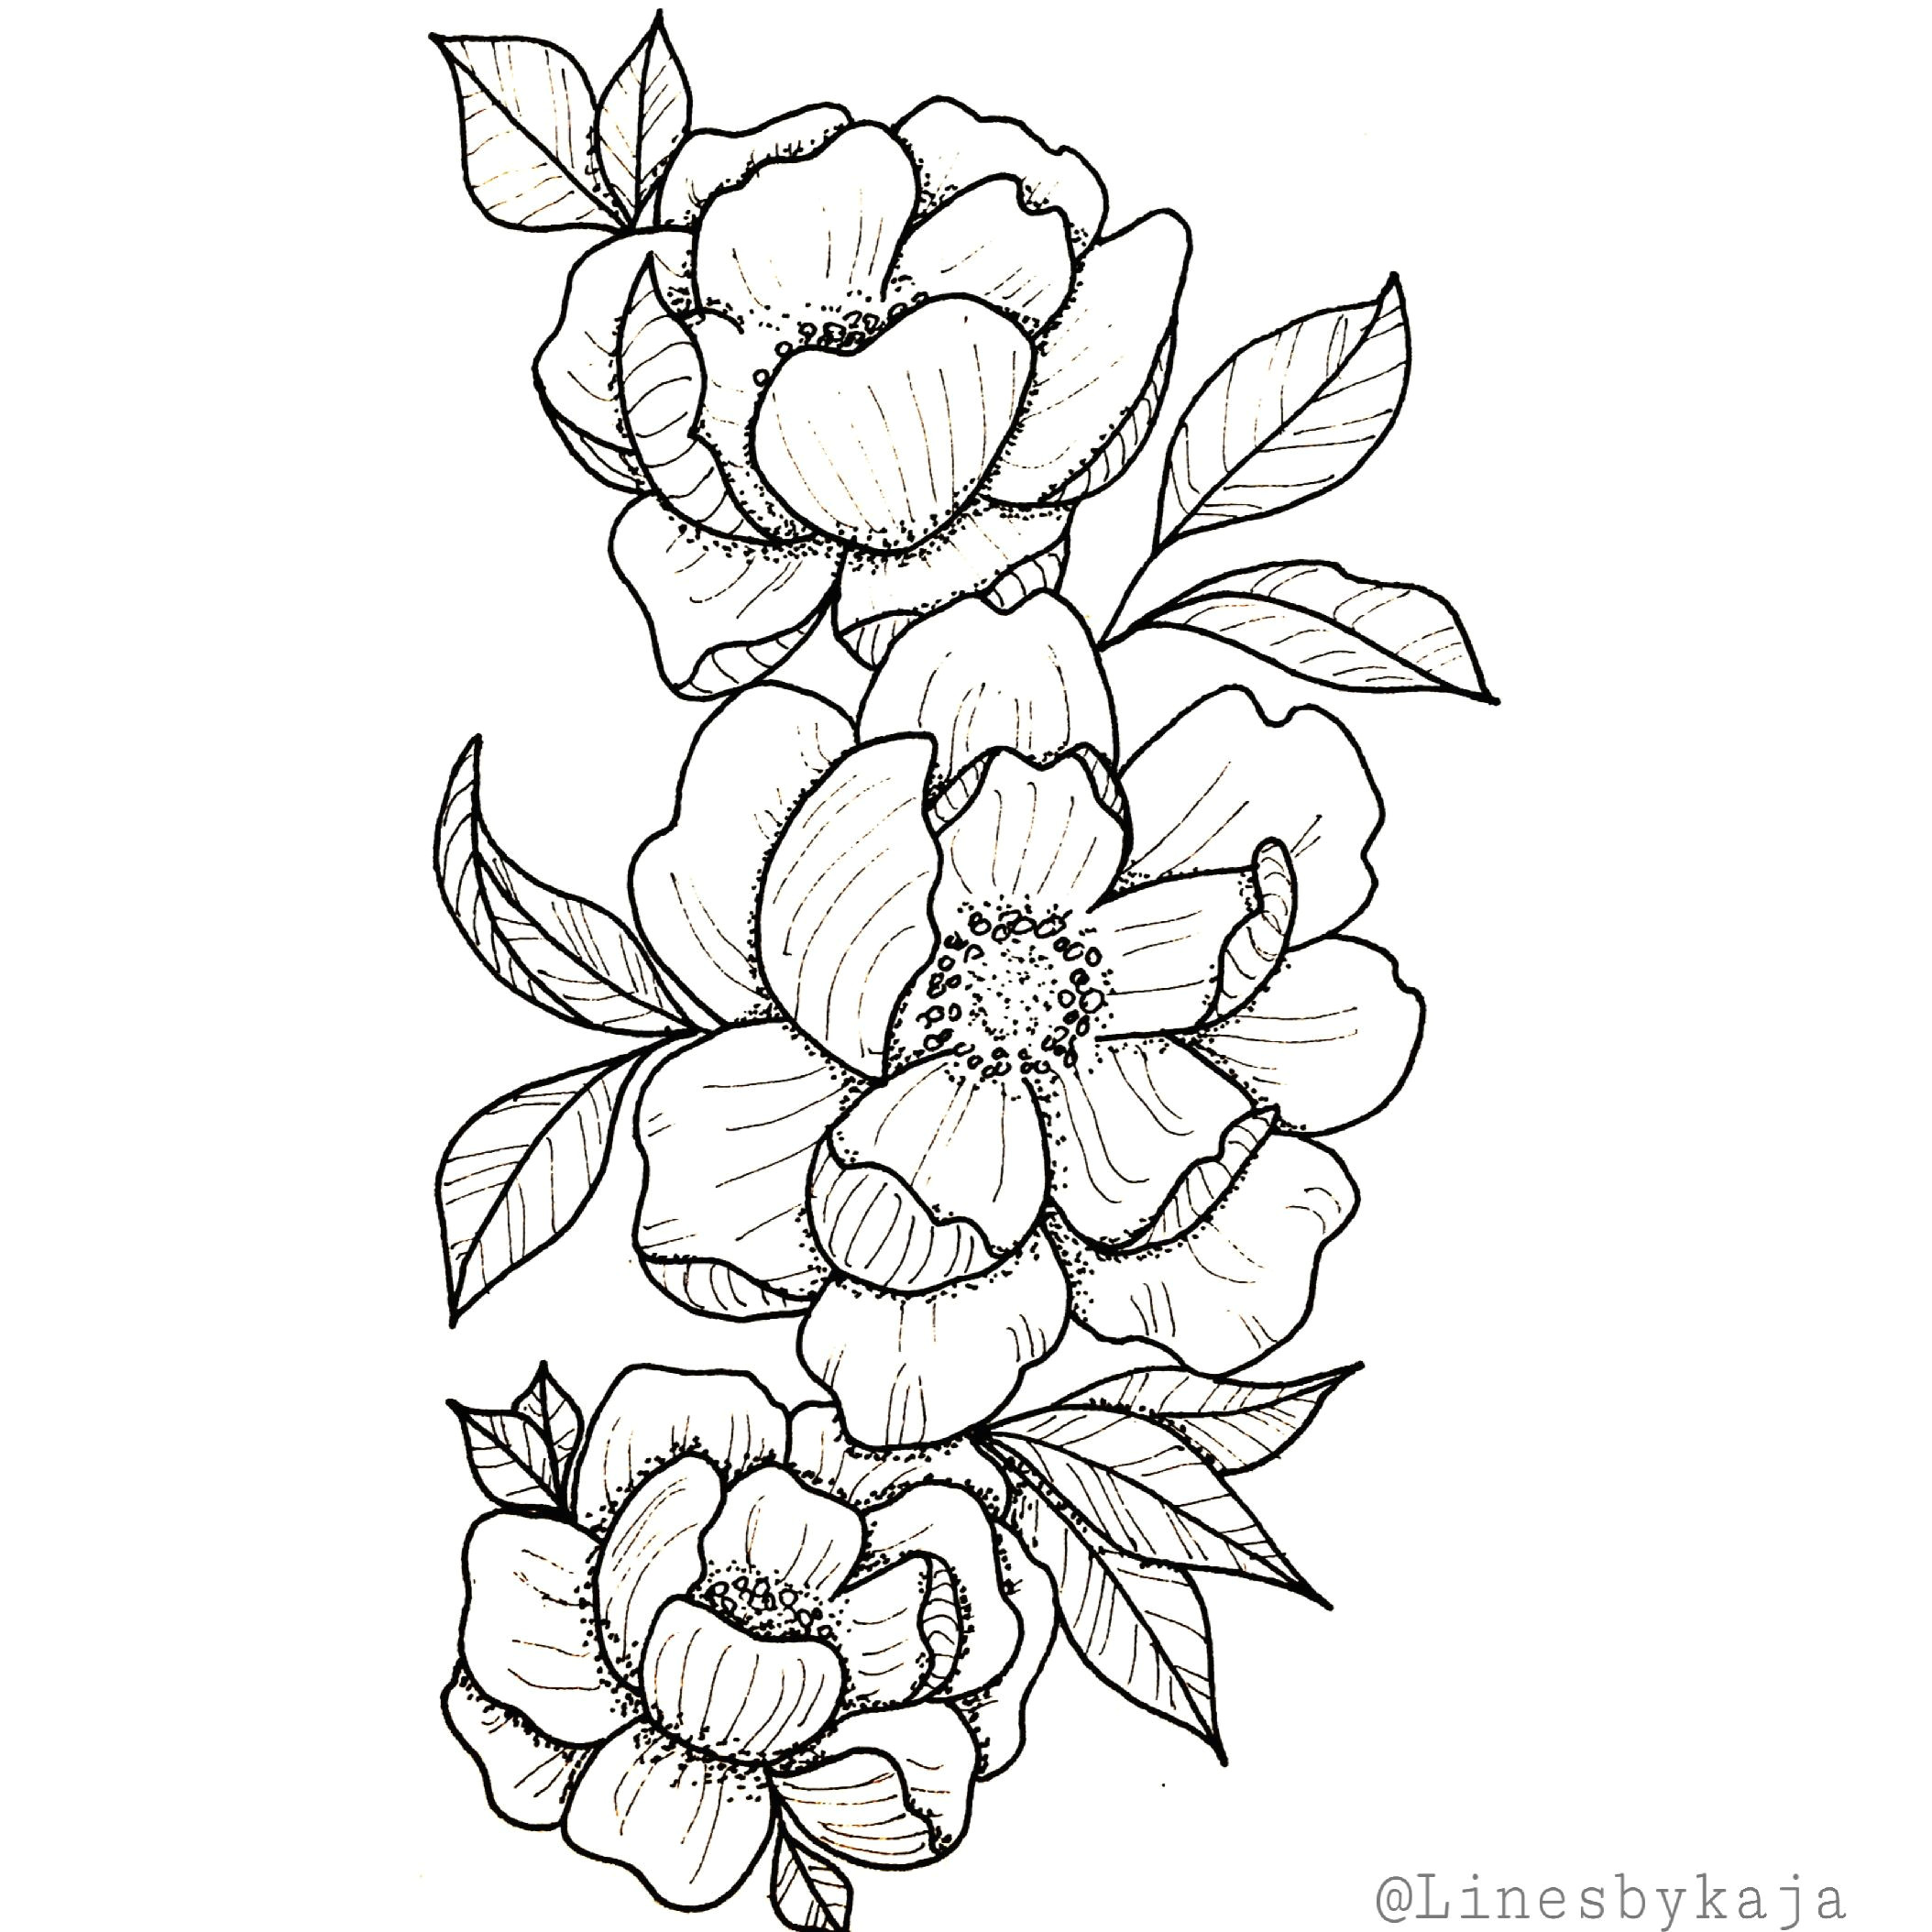 Drawings Of Large Flowers Tattoo Tattooart Tattoosforwomen Tattoodesigns Drawings